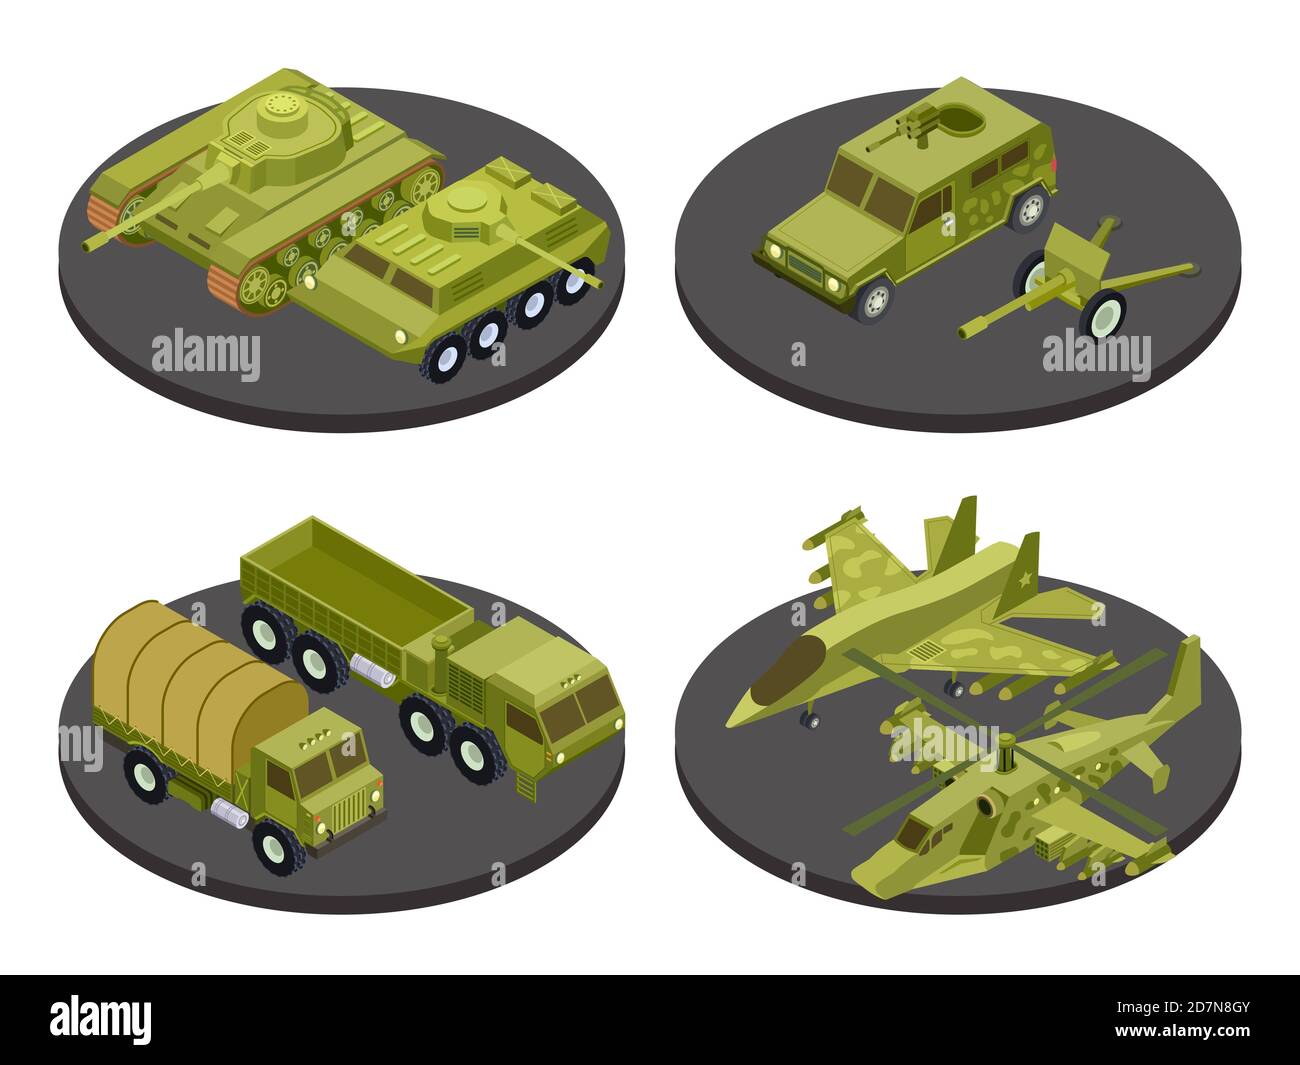 Militärfahrzeuge isometrische Symbol Set mit Tanks Transport Raketen-Systeme und Artillerie Schlagzeilen Vektor-Illustration. Militär isometrischen Transport, 3d gepanzerte Maschine Stock Vektor